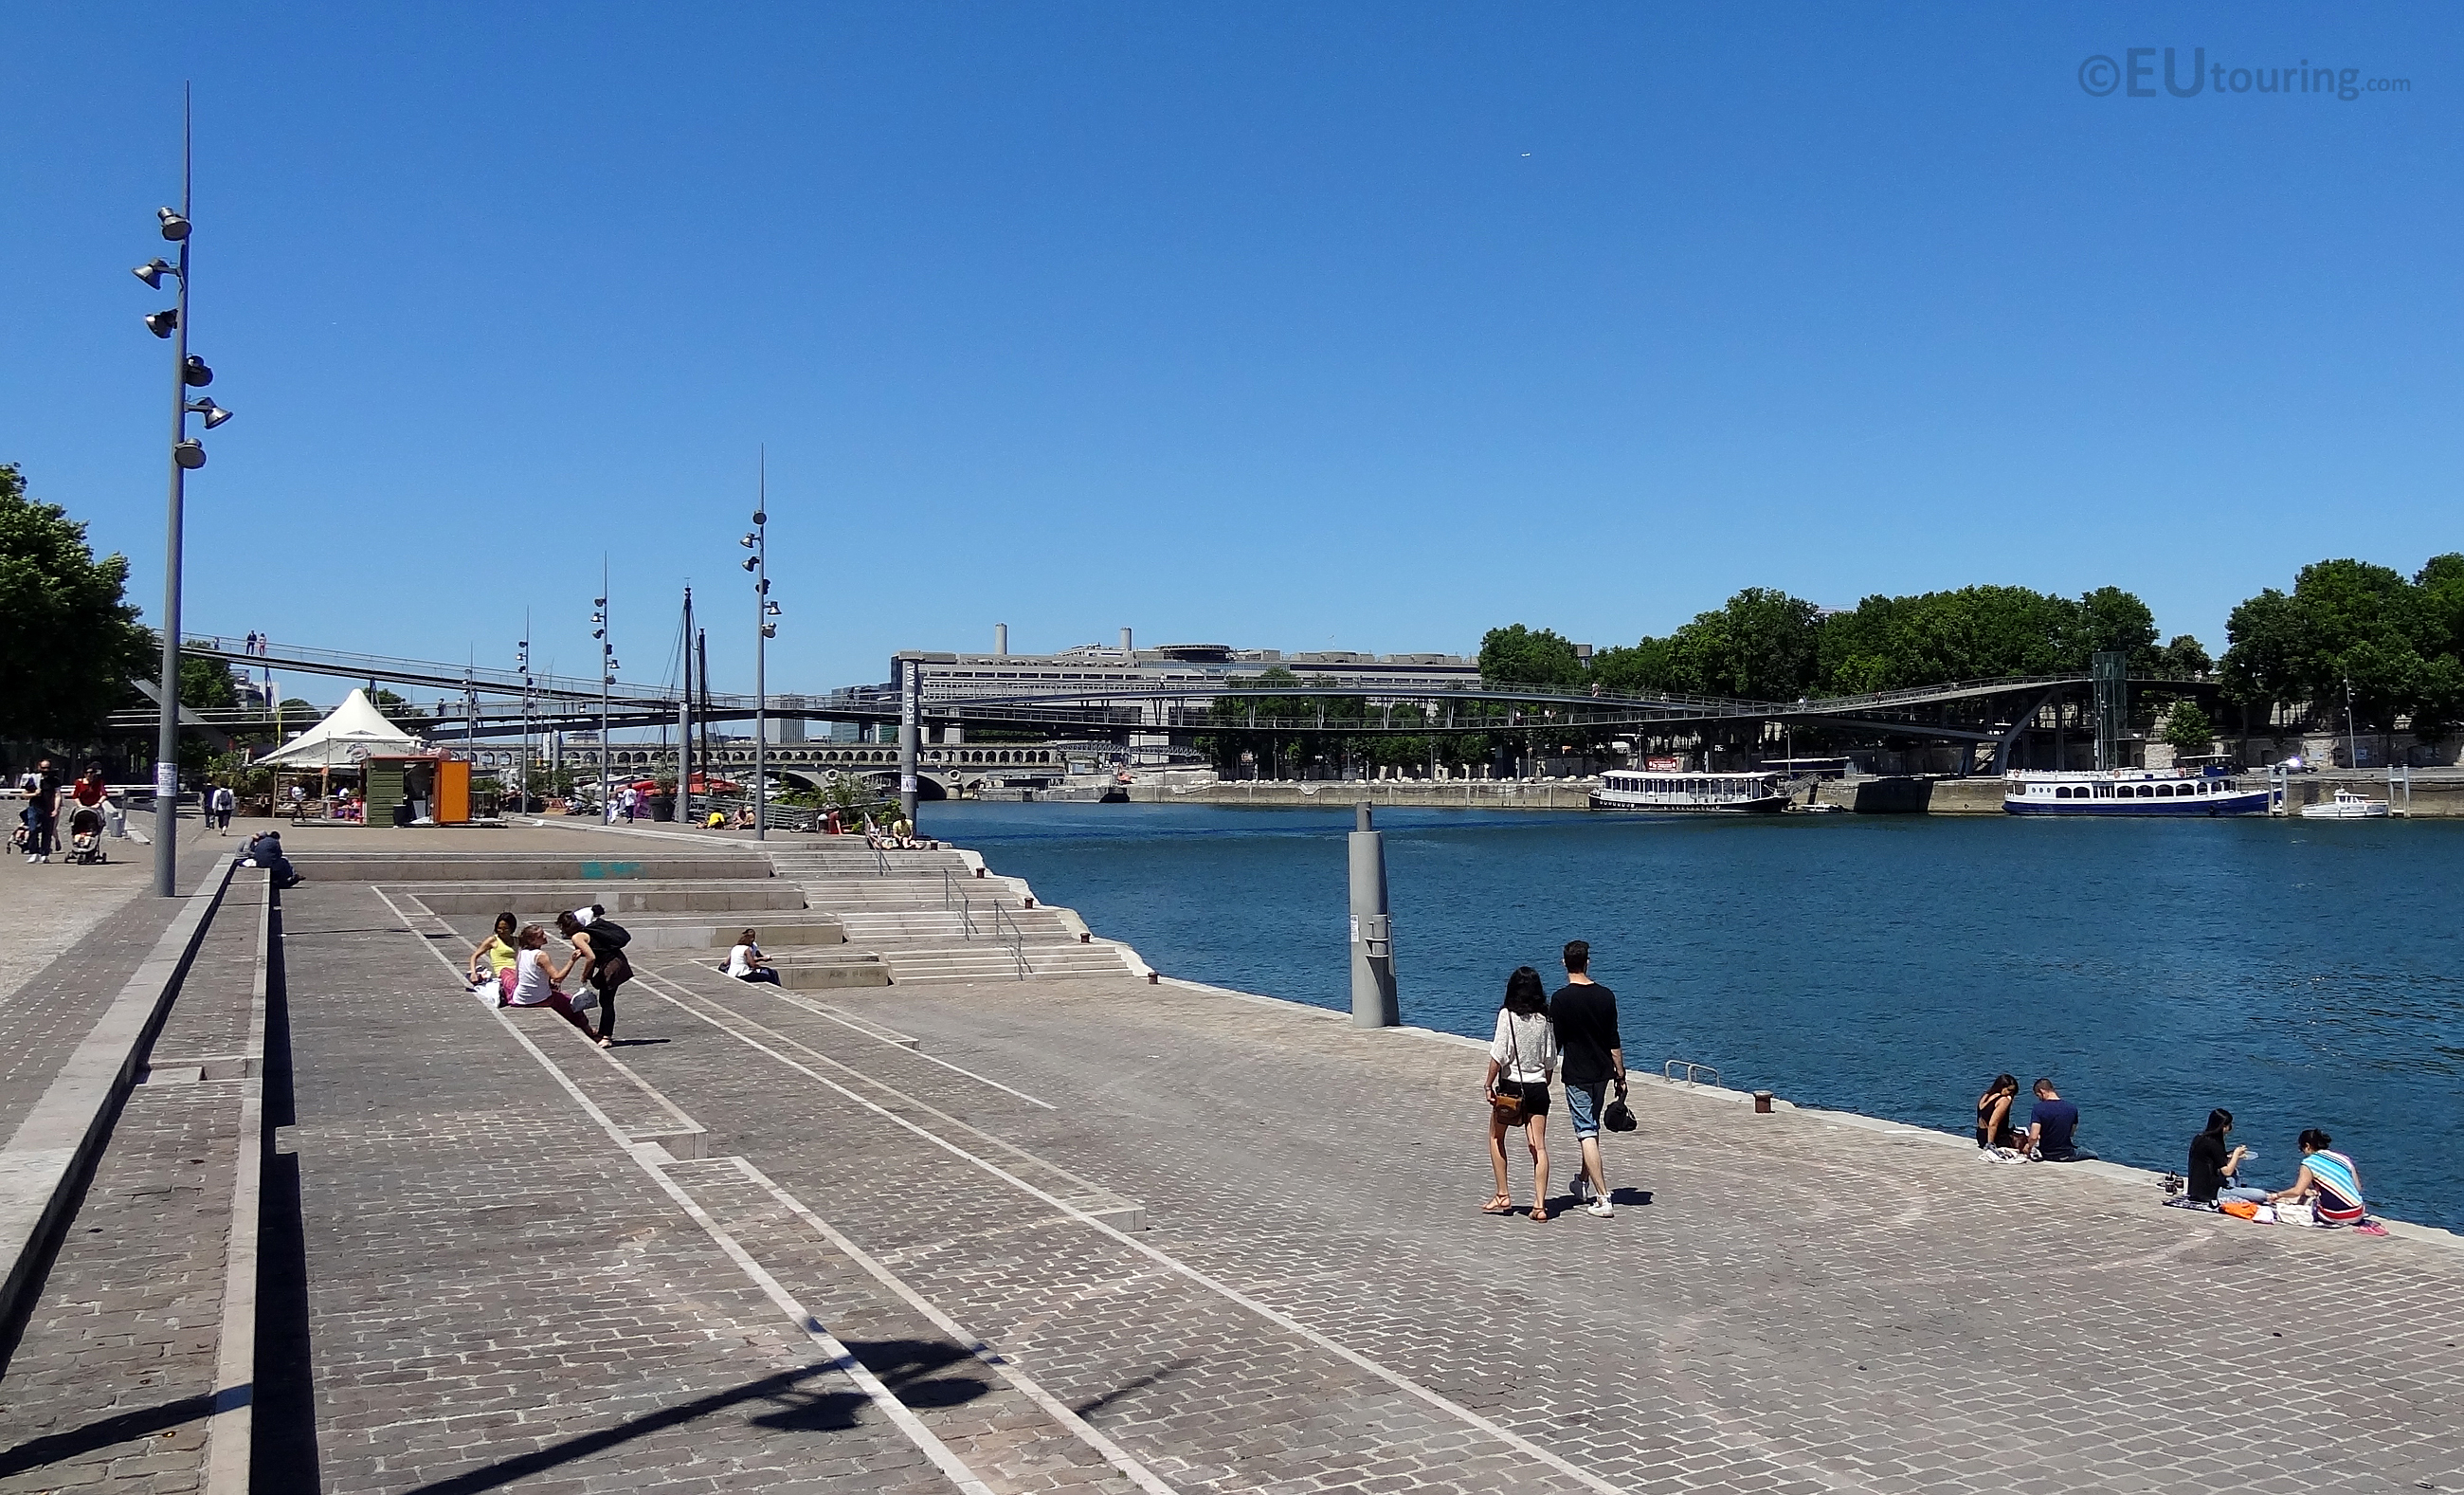 Pedestrian bridge over the Seine